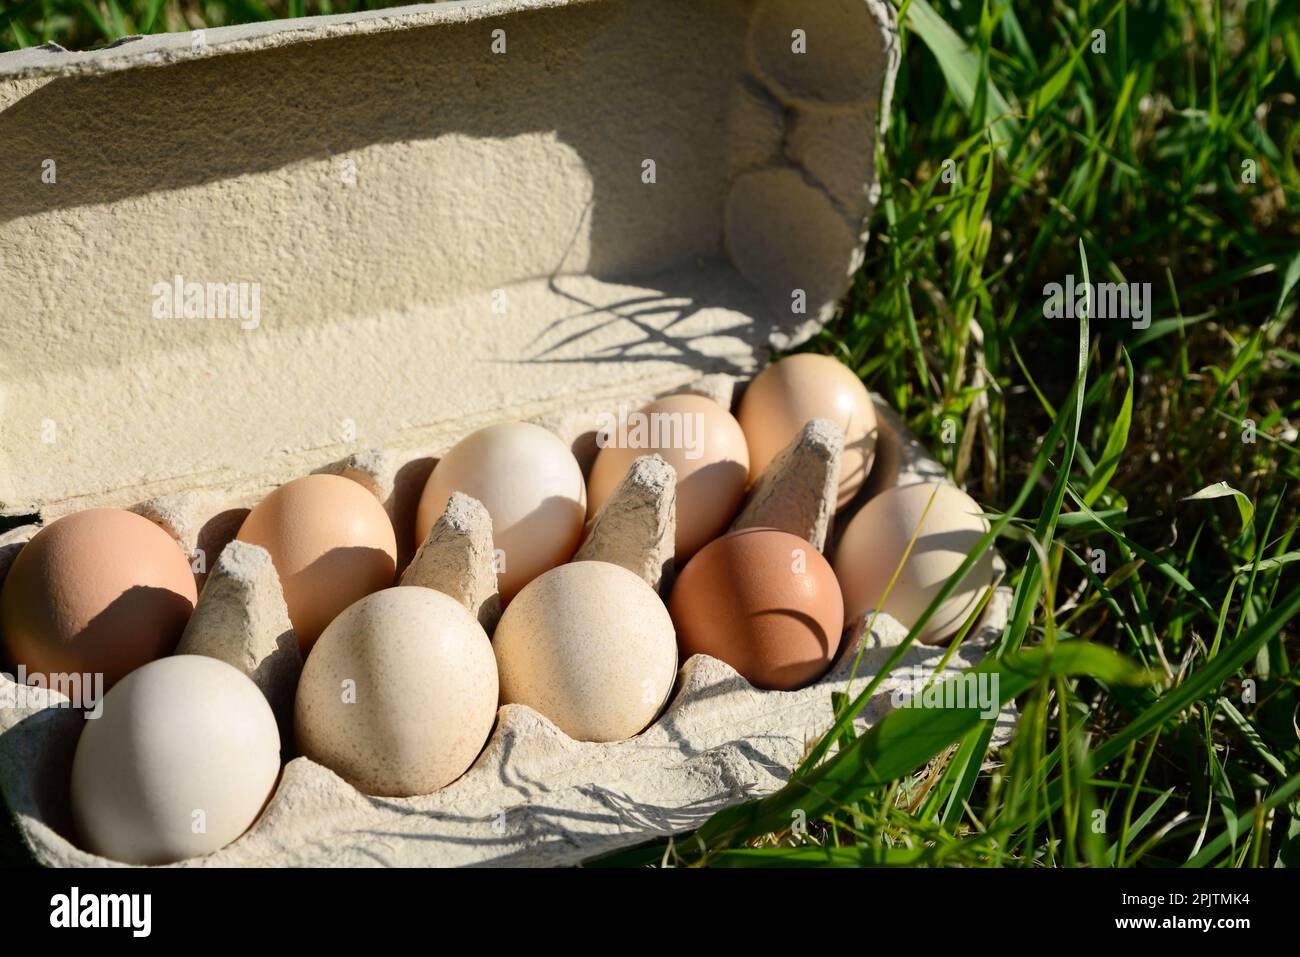 Karton mit verschiedenen Eiern auf grünem Gras im Freien Stockfoto